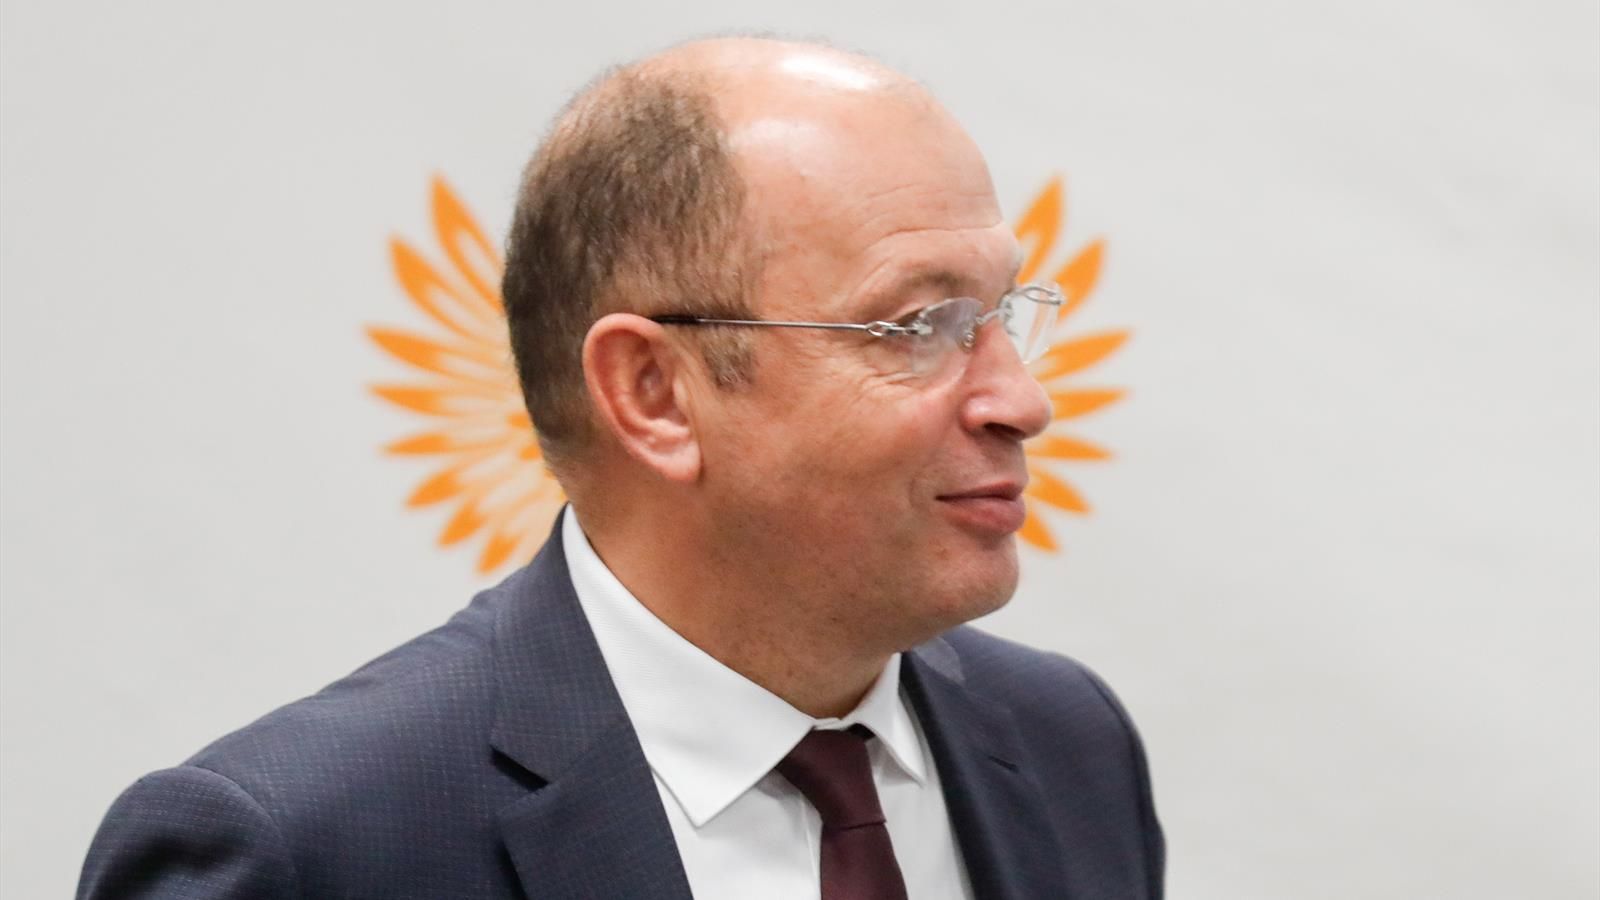 Колосков объяснил, почему Прядкин остался единственным кандидатом на должность президента РПЛ - фото